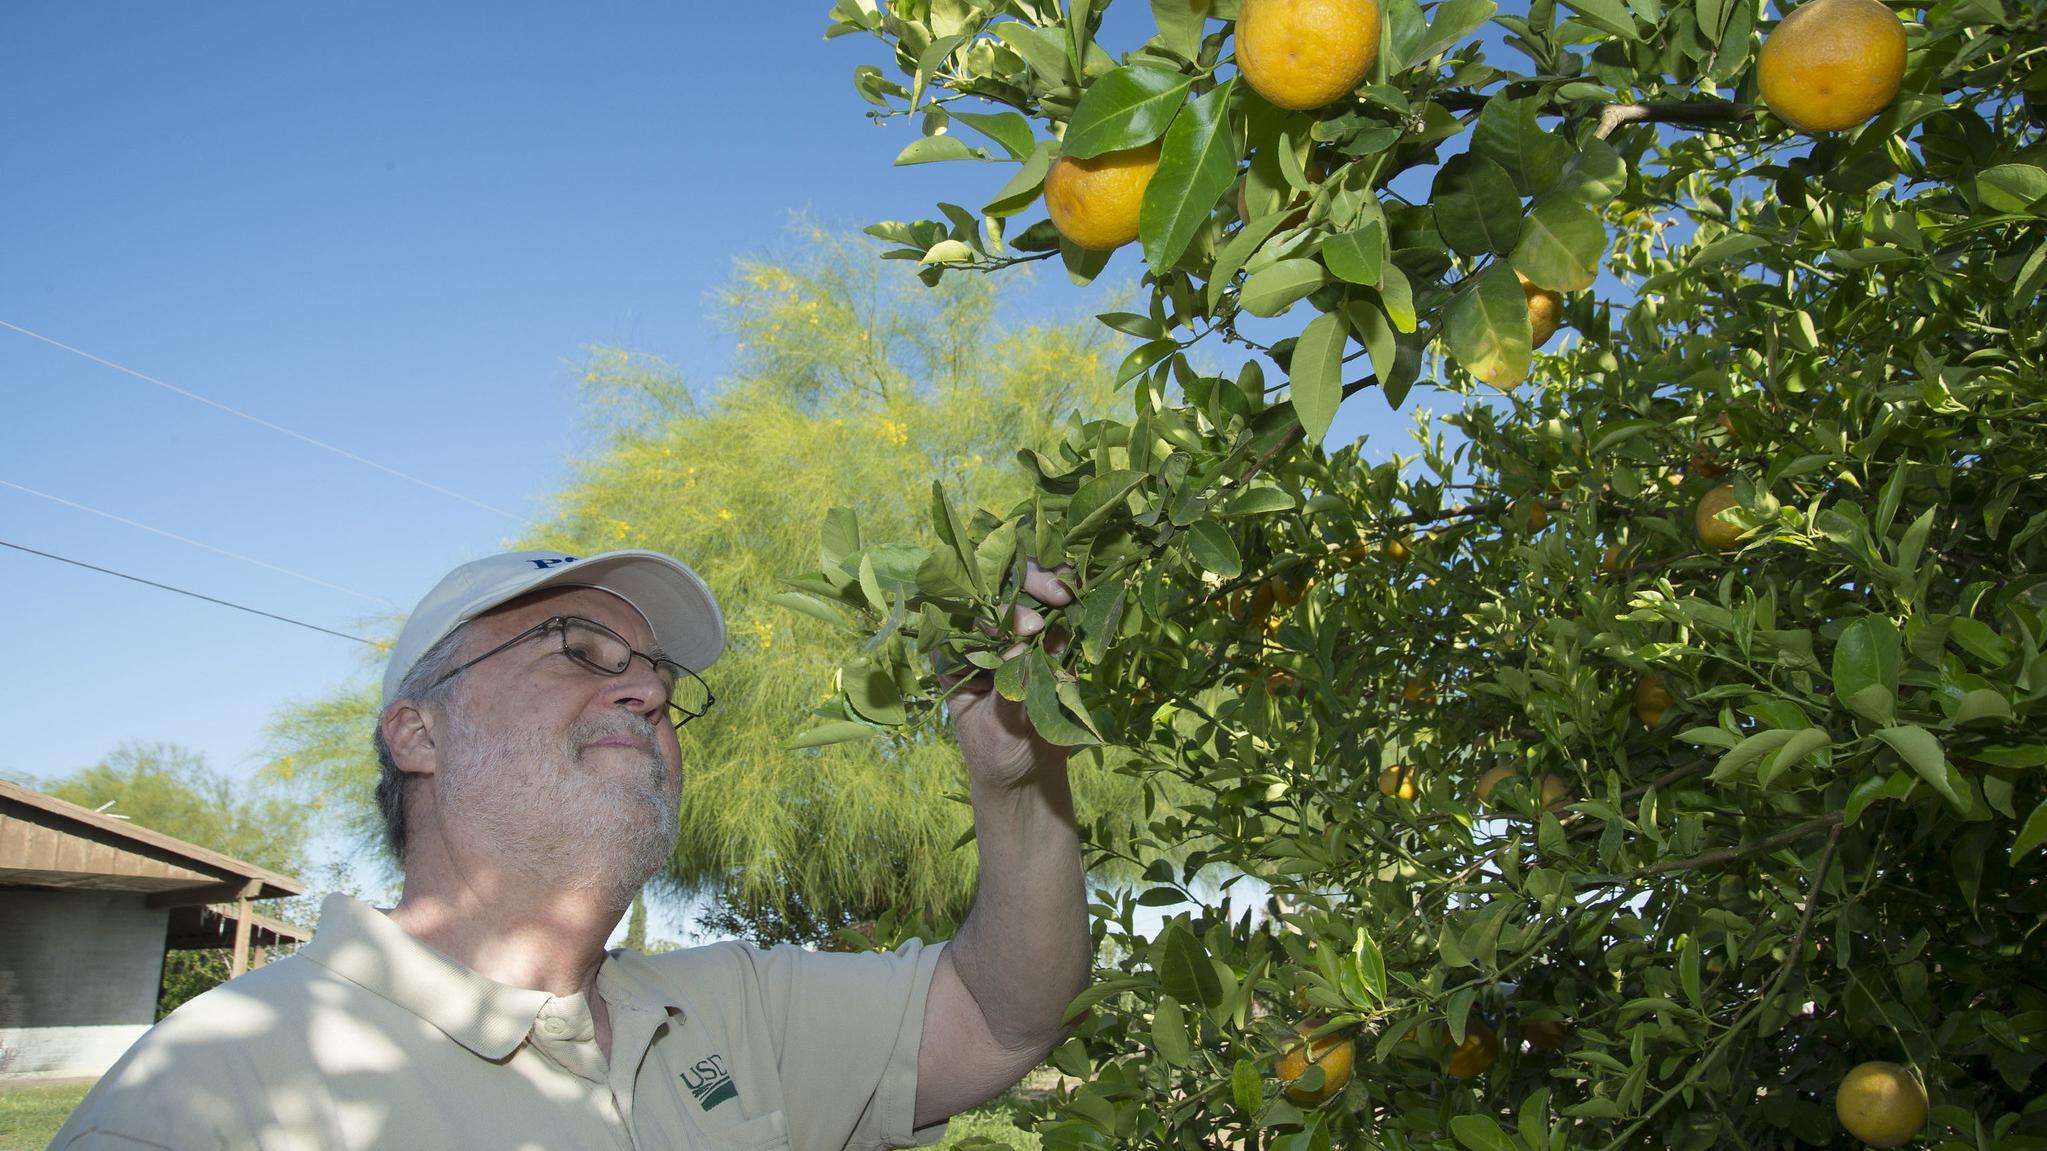 USDA inspector looking at citrus tree.